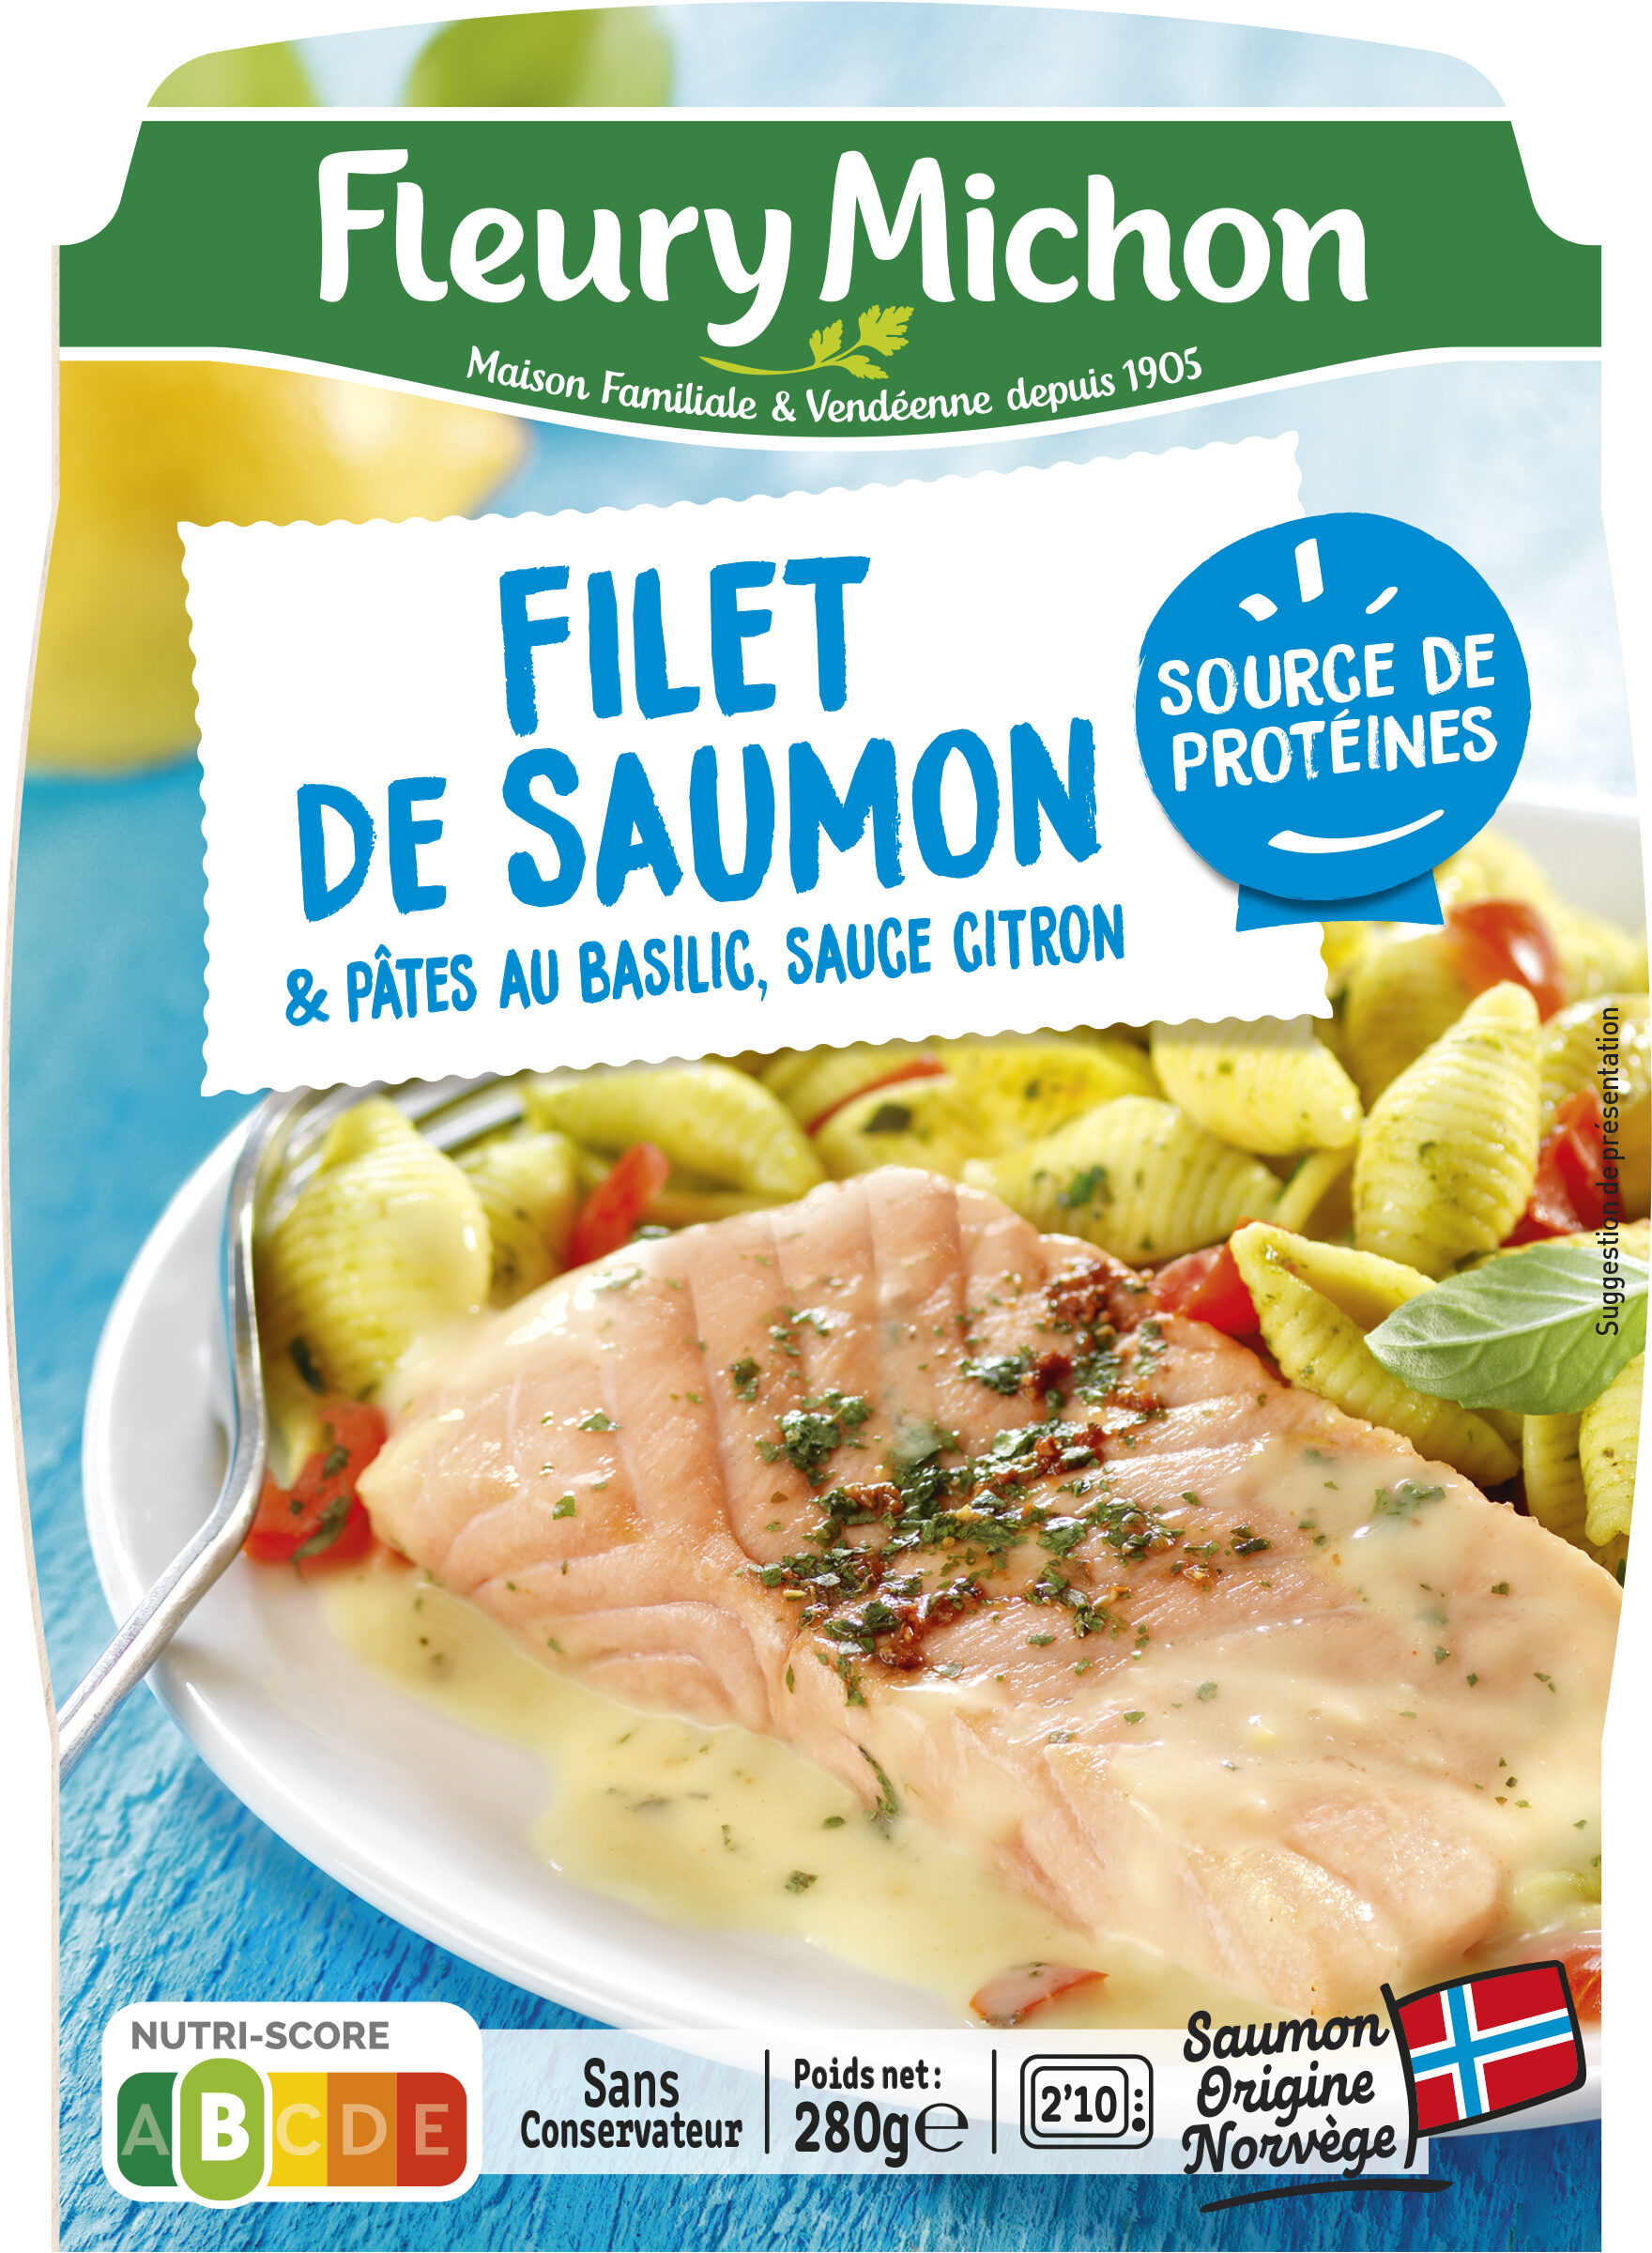 Filet de saumon & pâtes au basilic, sauce citron - Product - fr